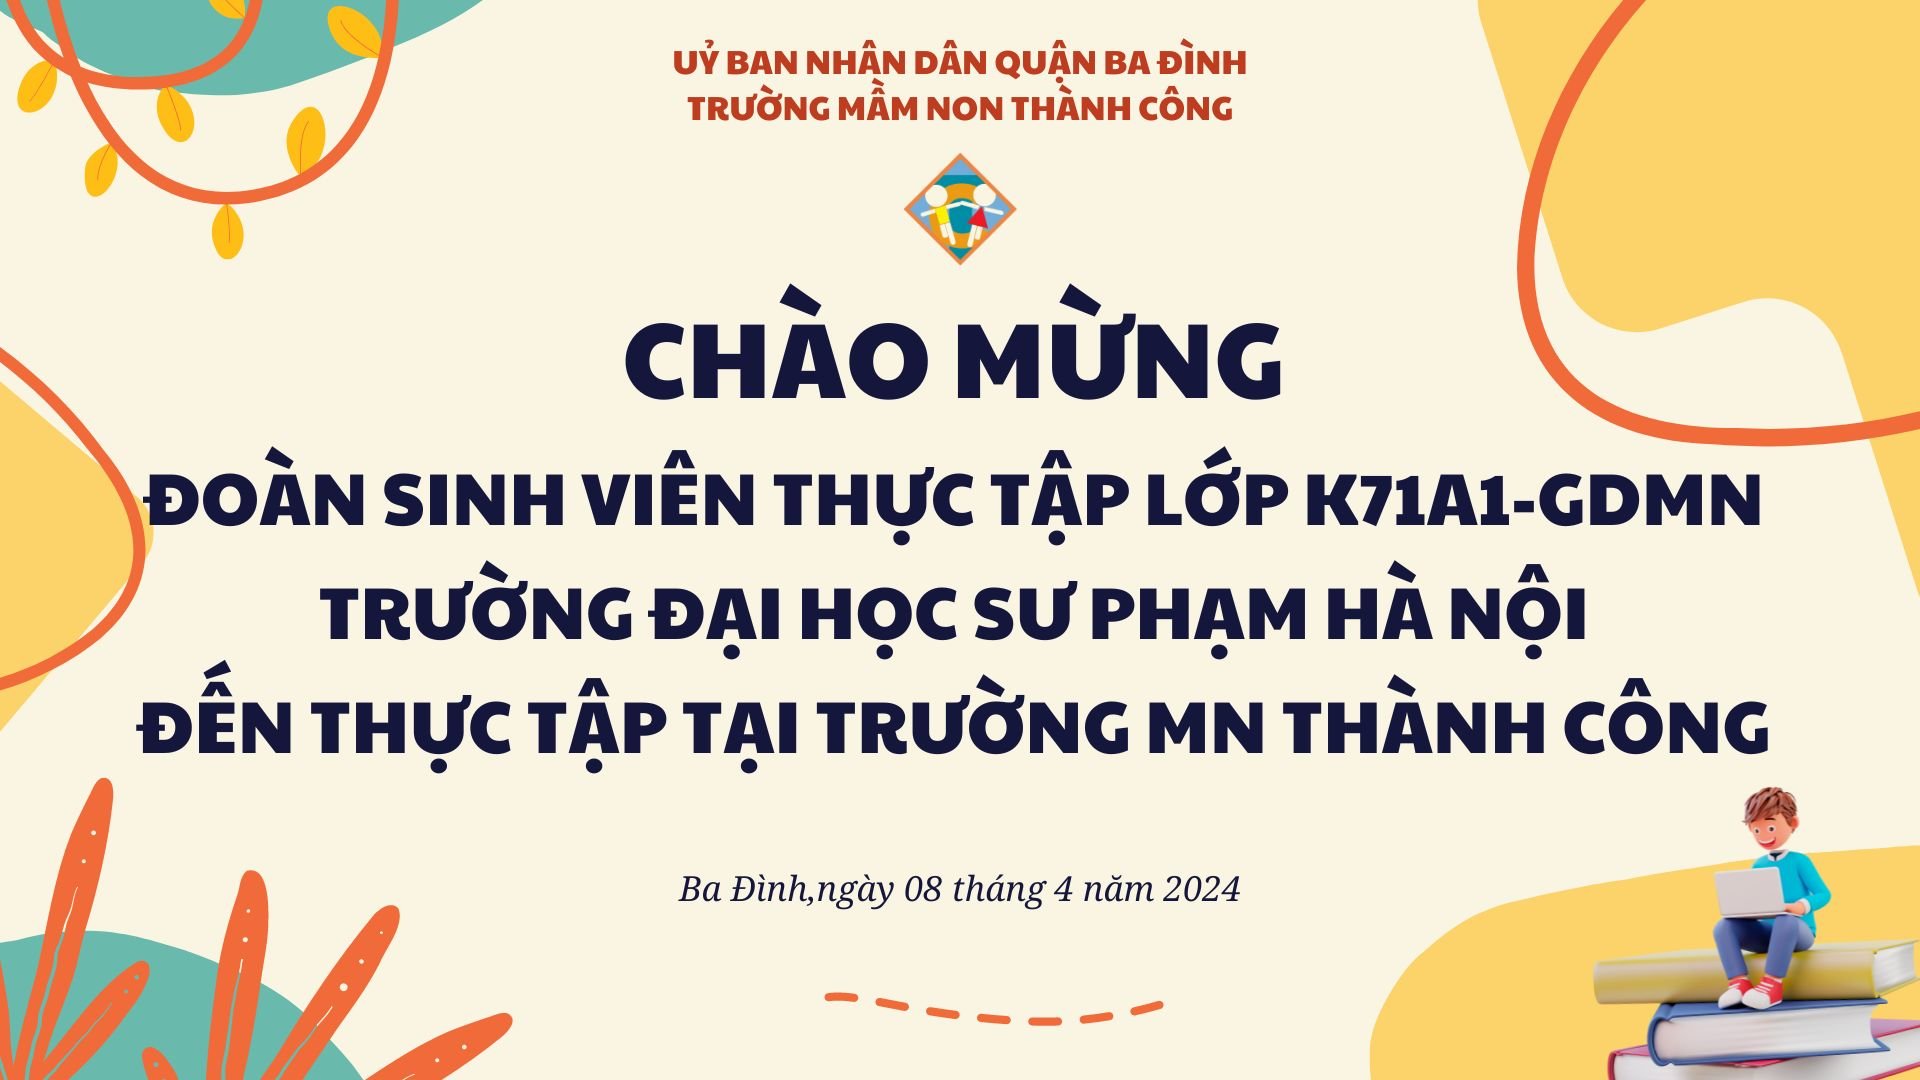 Trường mầm non Thành Công đón đoàn thực tập lớp K71A2 - GDMN Trường Đại học Sư Phạm Hà Nội.